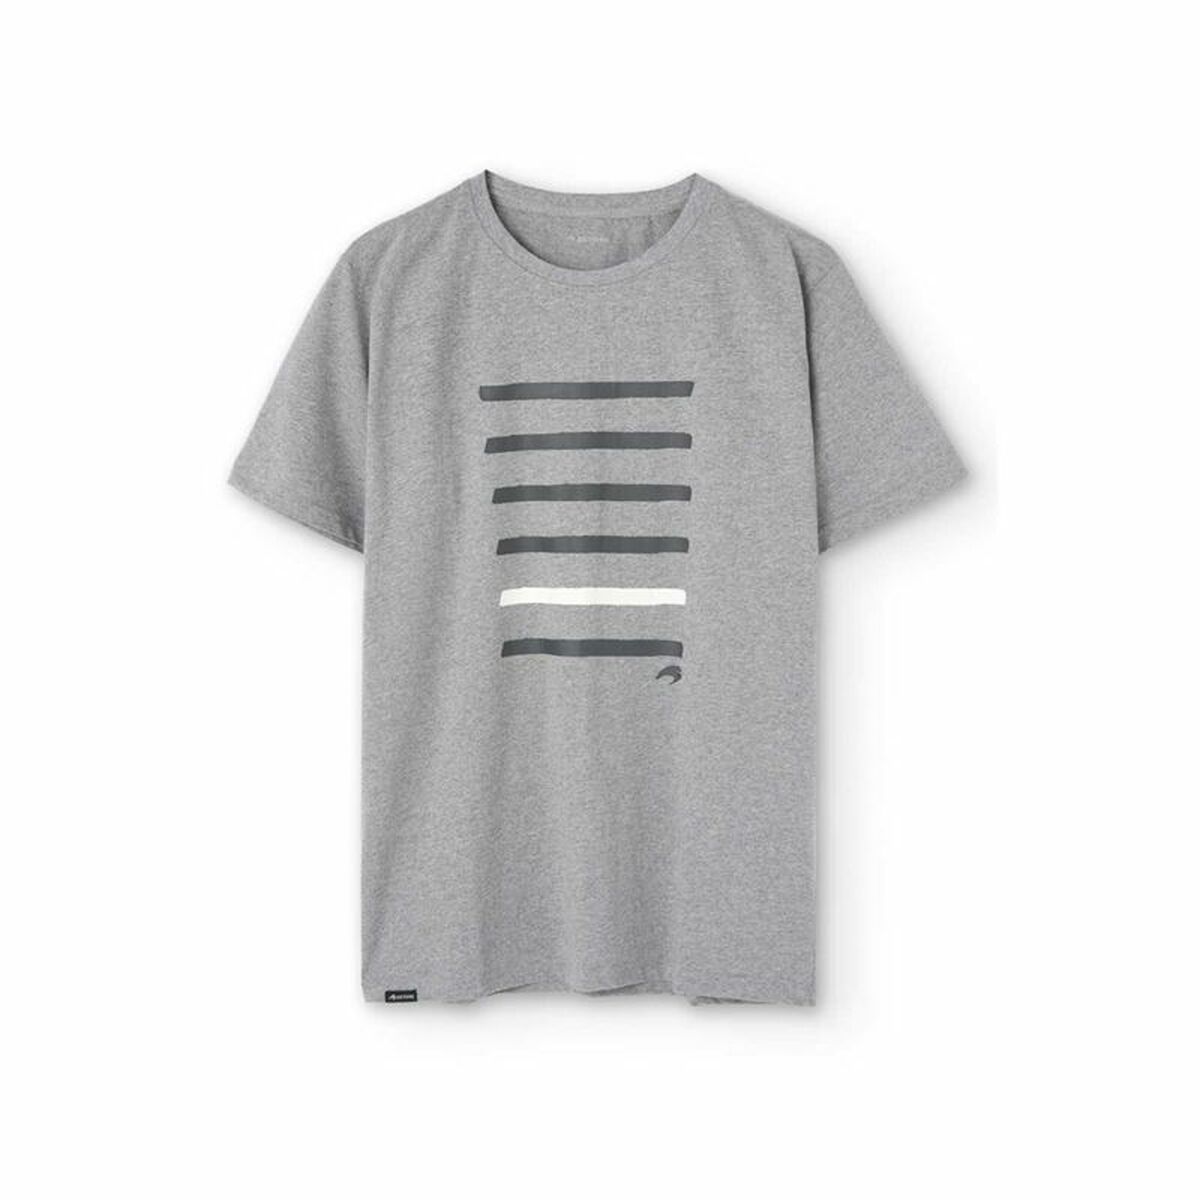 Osta tuote Miesten T-paita Astore Maxi  Harmaa (Koko: XL) verkkokaupastamme Korhone: Urheilu & Vapaa-aika 20% alennuksella koodilla VIIKONLOPPU